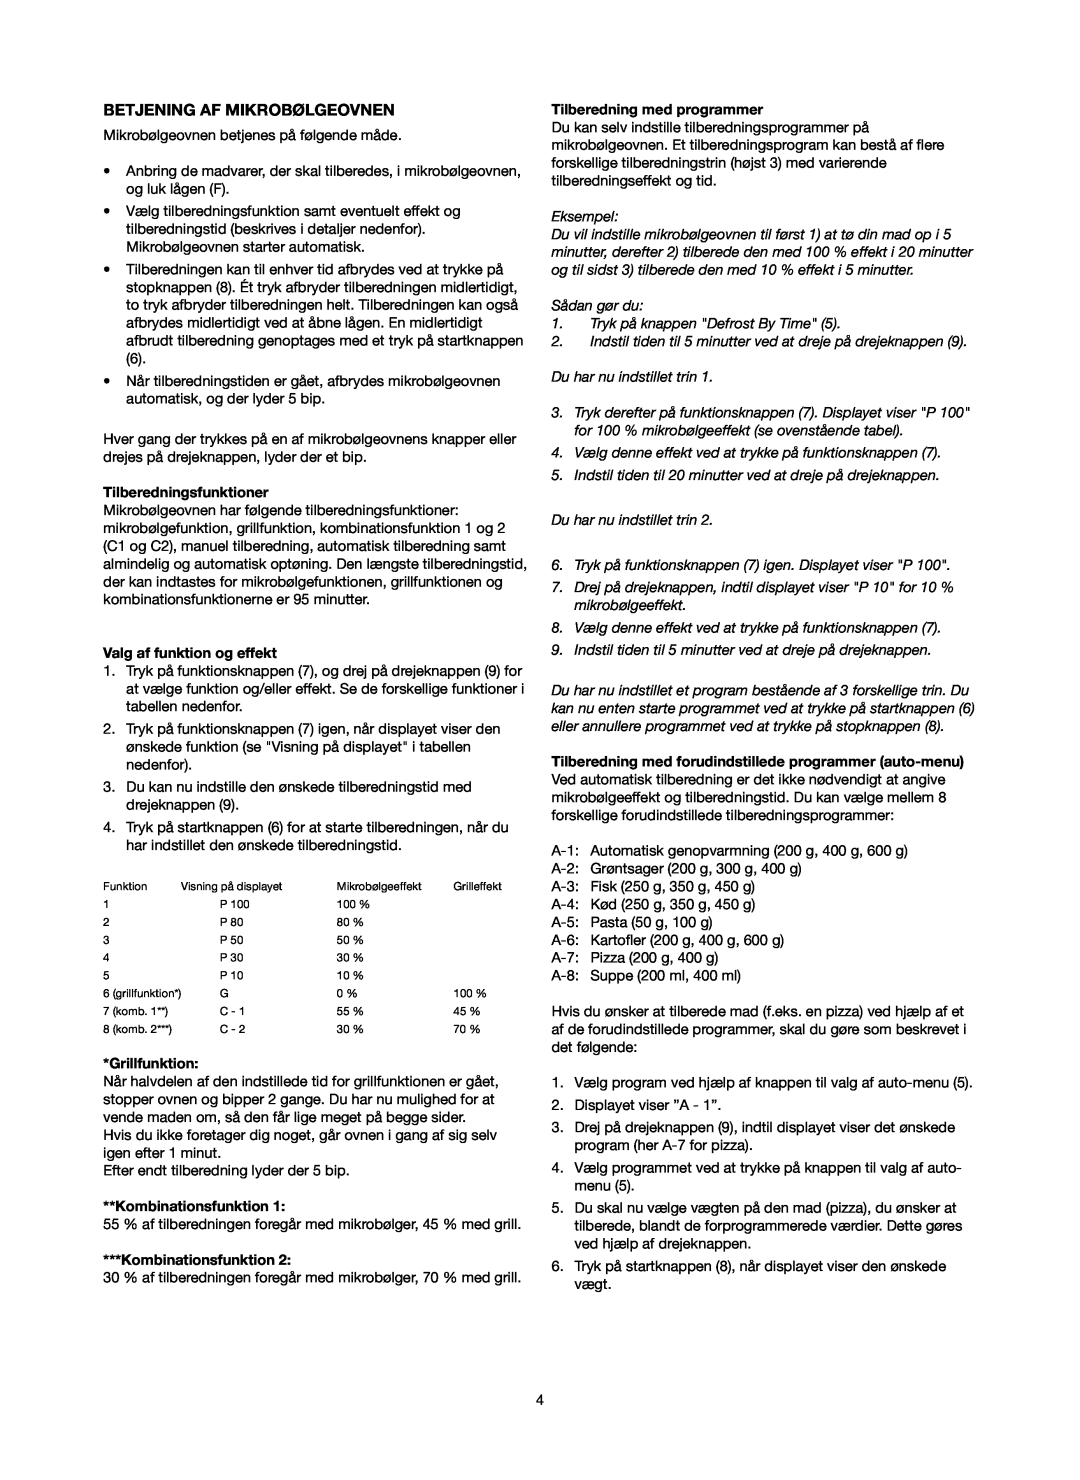 Melissa 753-089 manual Betjening Af Mikrobølgeovnen, Tilberedningsfunktioner, Valg af funktion og effekt, Grillfunktion 